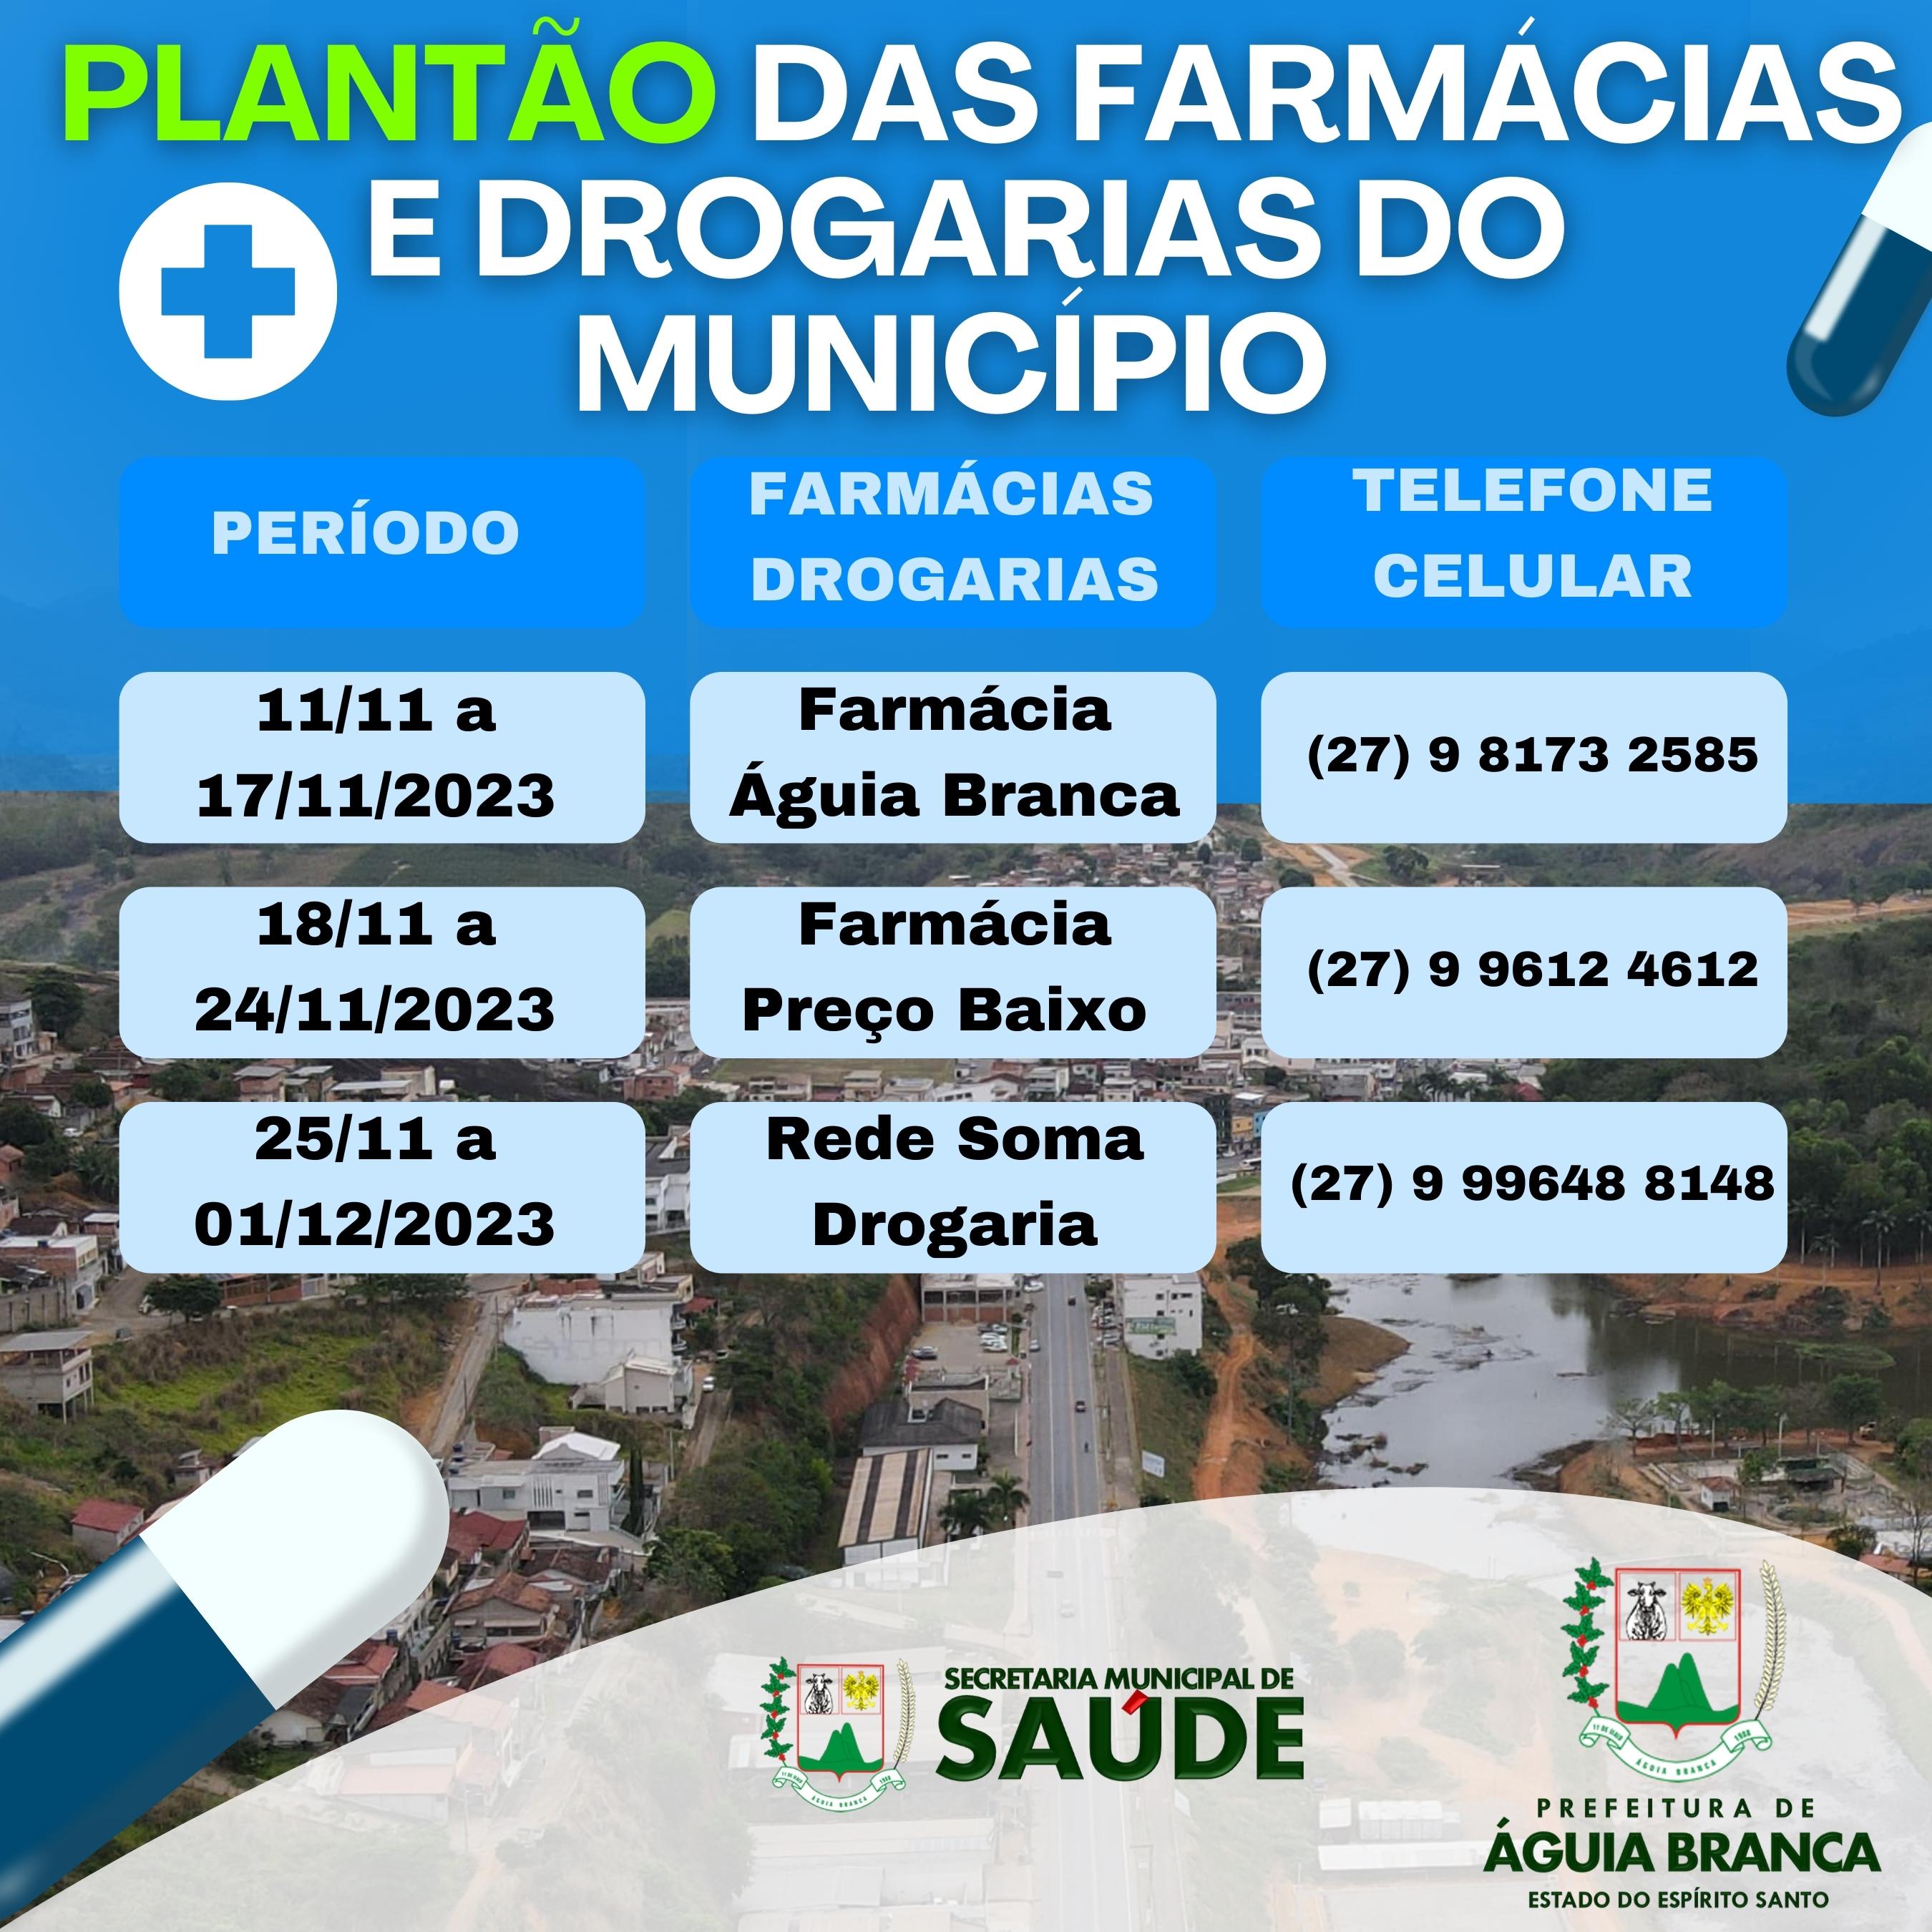  PLANTÃO DAS FARMÁCIAS E DROGARIAS DO MUNICÍPIO 